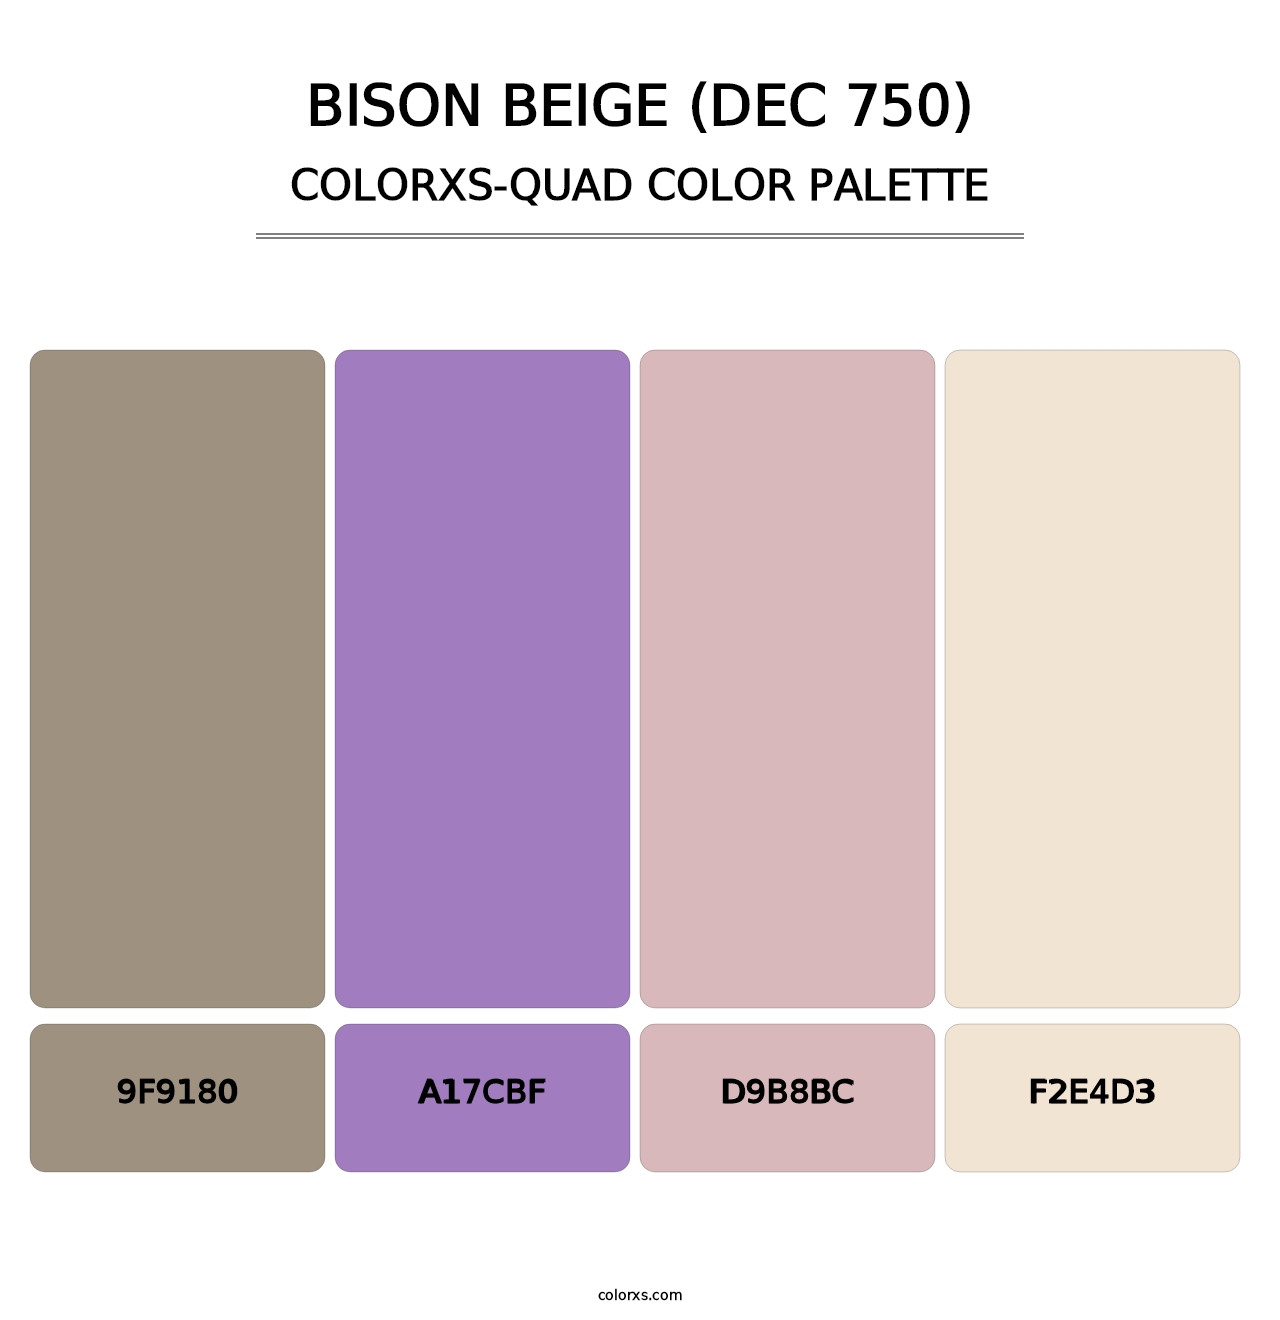 Bison Beige (DEC 750) - Colorxs Quad Palette